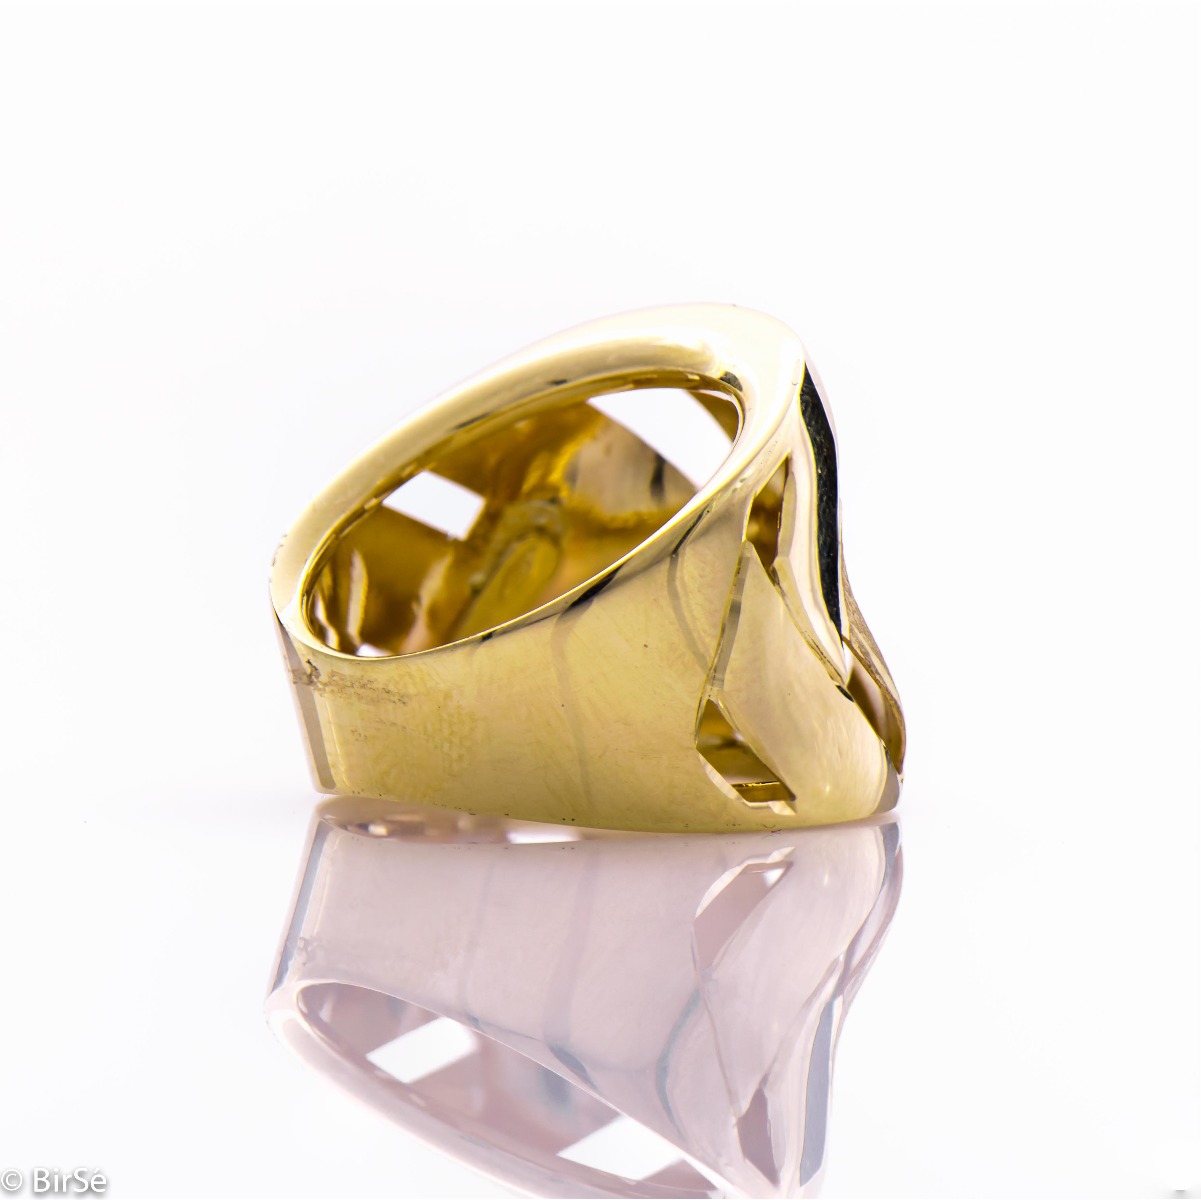 Златен пръстен - Плетки